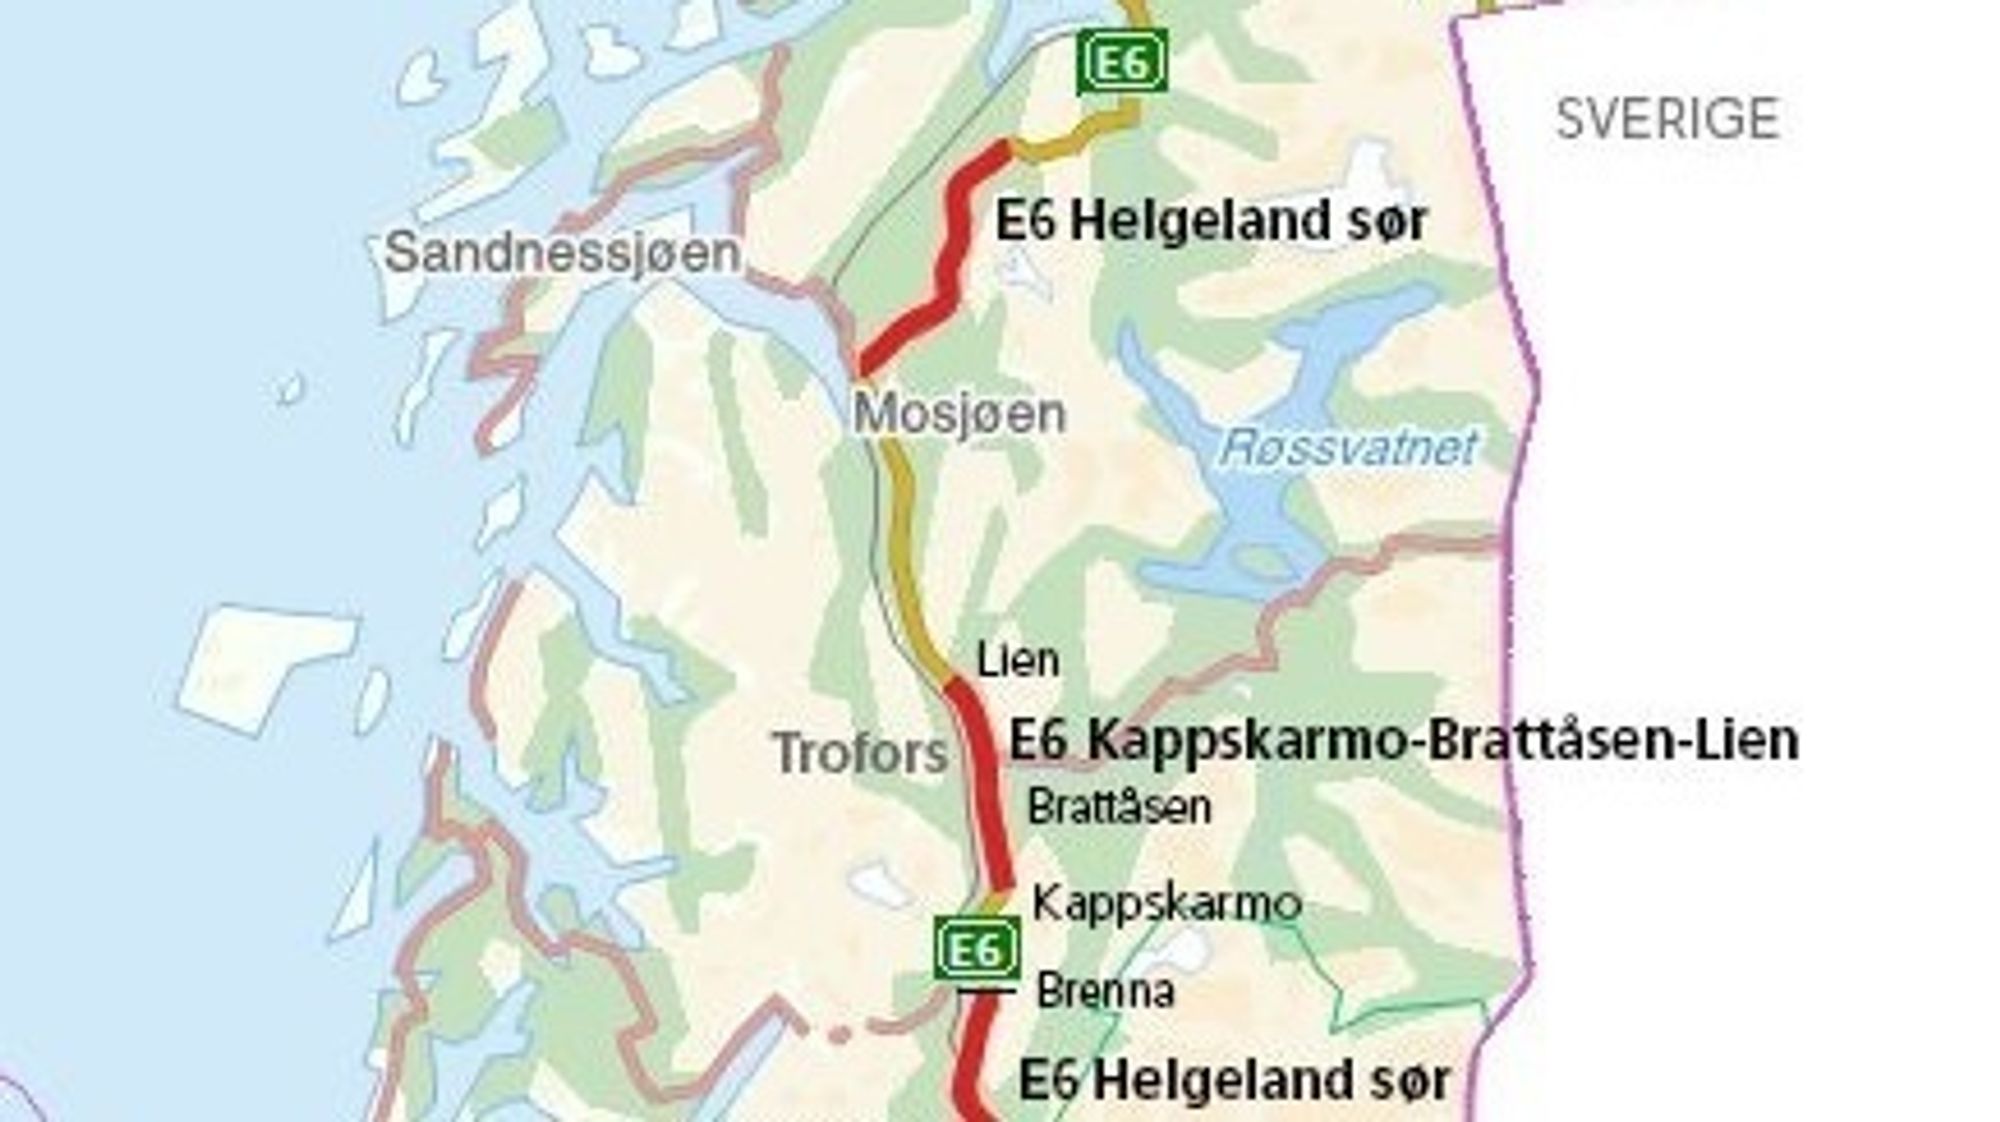 E6 Helgeland